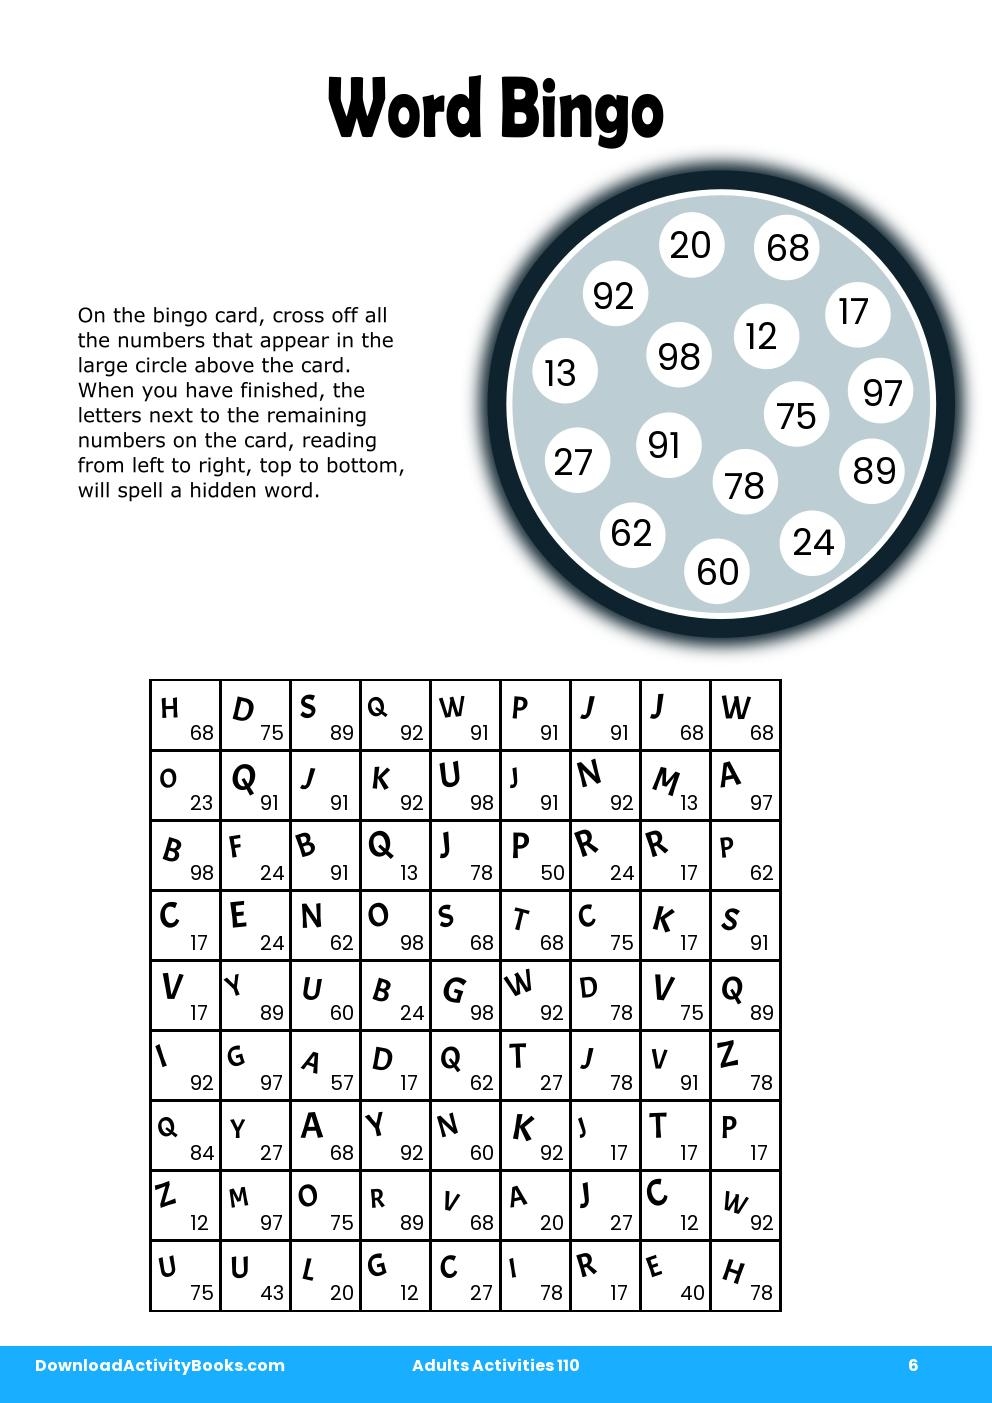 Word Bingo in Adults Activities 110